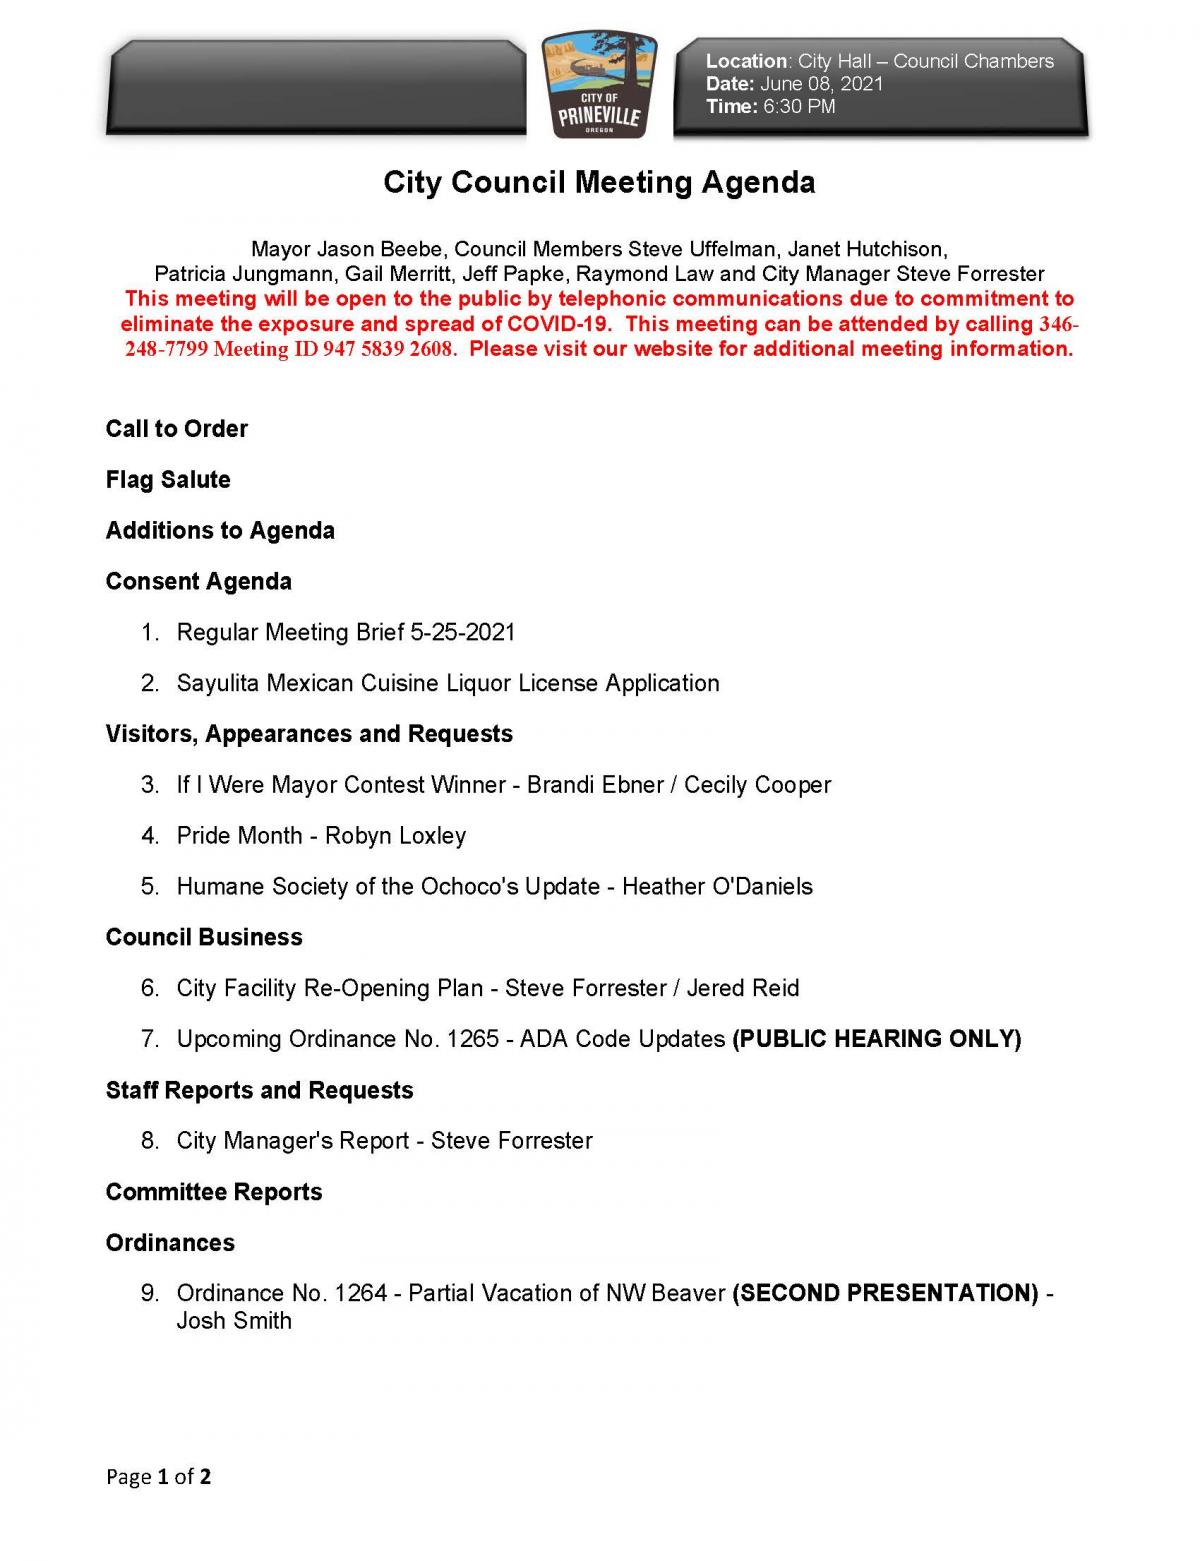 Page 1 - Council Agenda 6-8-21